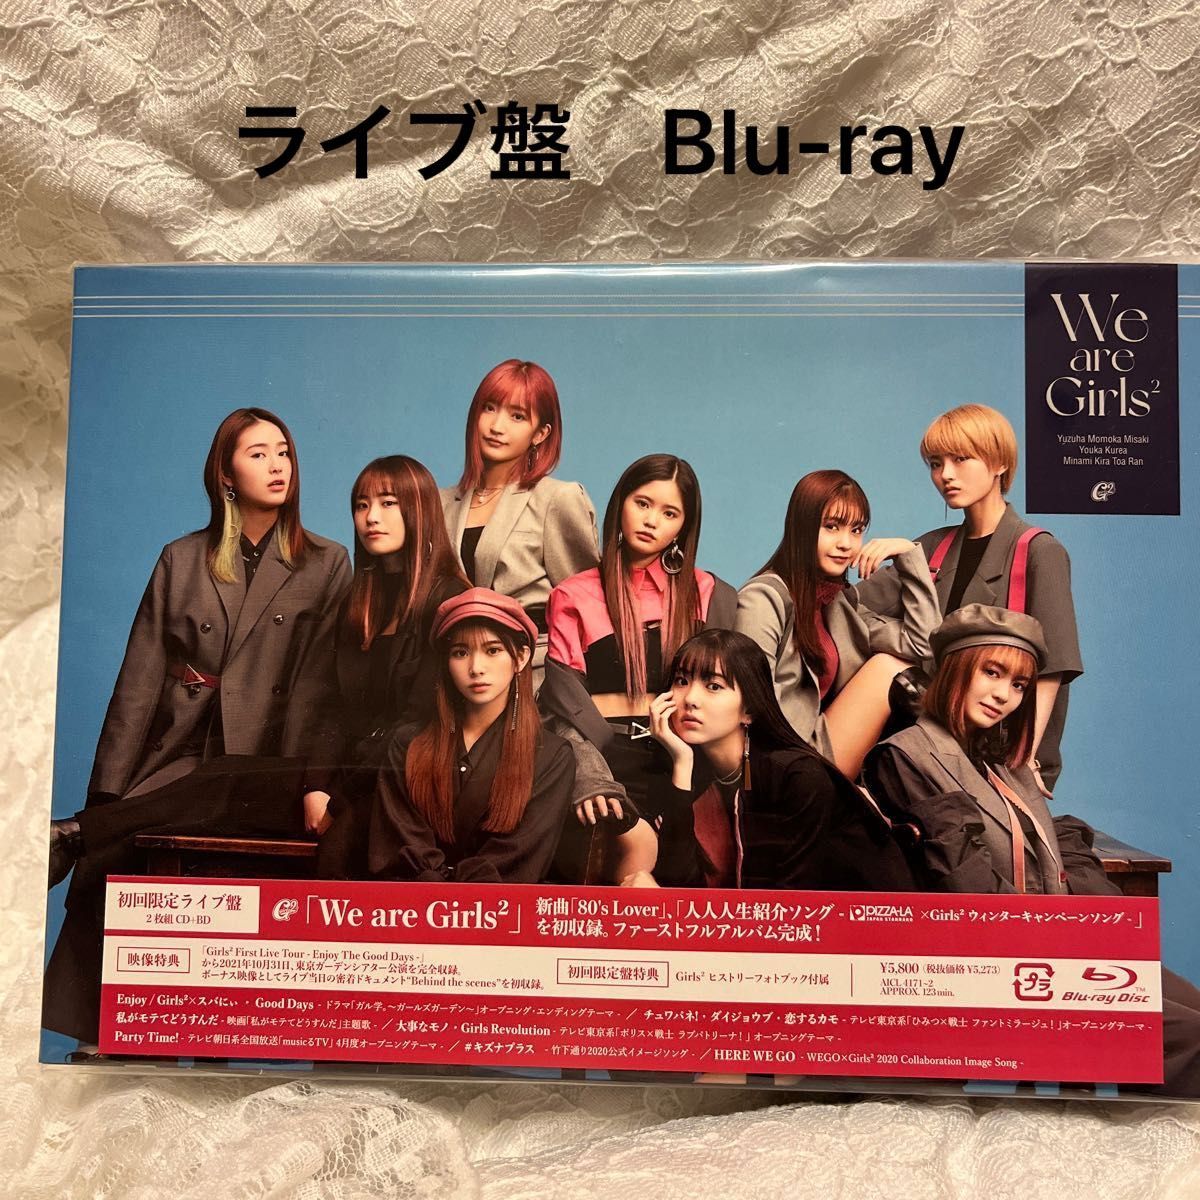 We are girls2 初回生産限定盤B ライブ盤Blu-ray付ヒストリーフォトブック付属 Girls2CD+Blu-ray